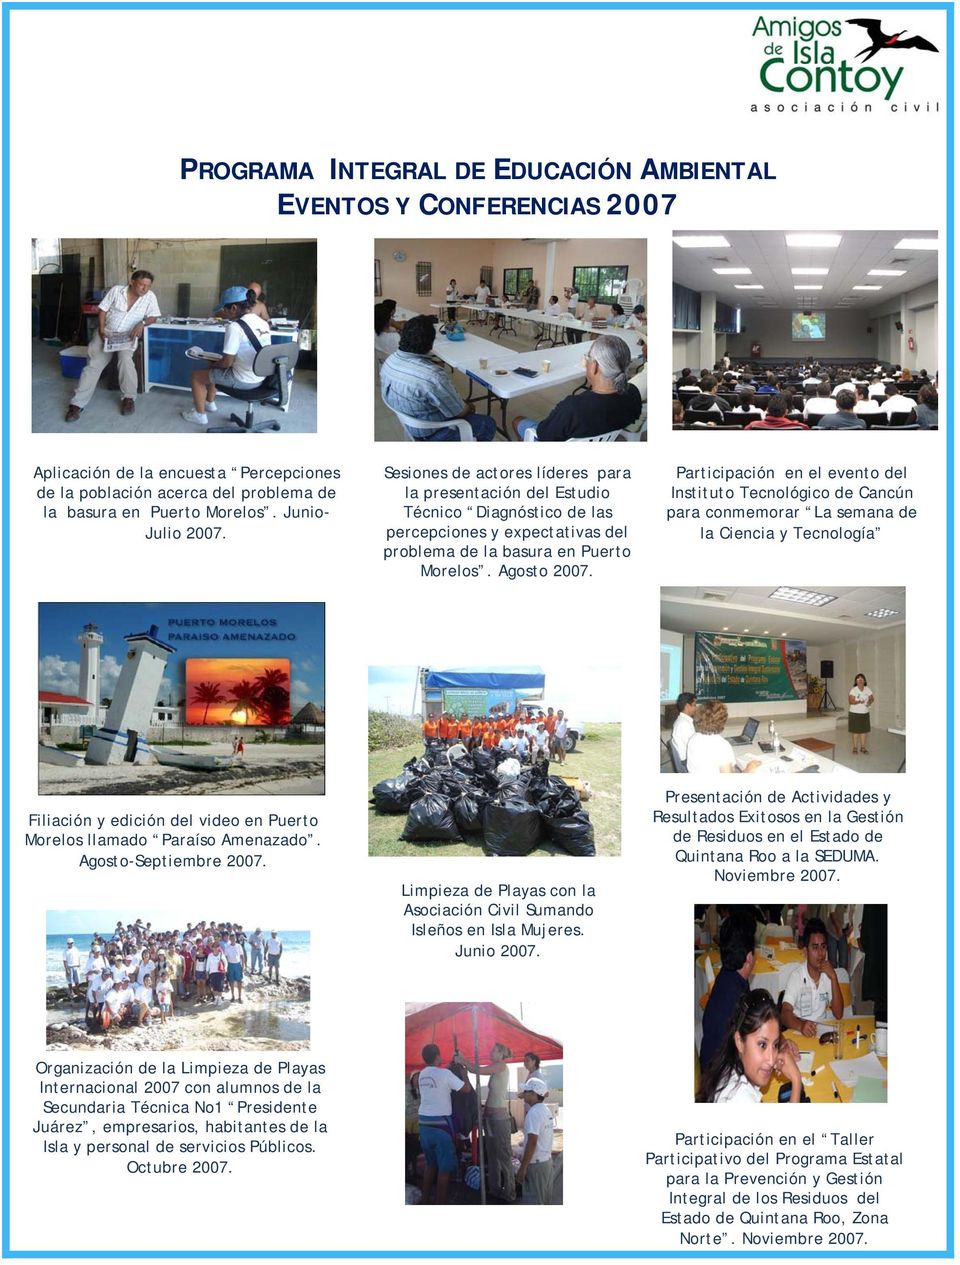 Participación en el evento del Instituto Tecnológico de Cancún para conmemorar La semana de la Ciencia y Tecnología Filiación y edición del video en Puerto Morelos llamado Paraíso Amenazado.